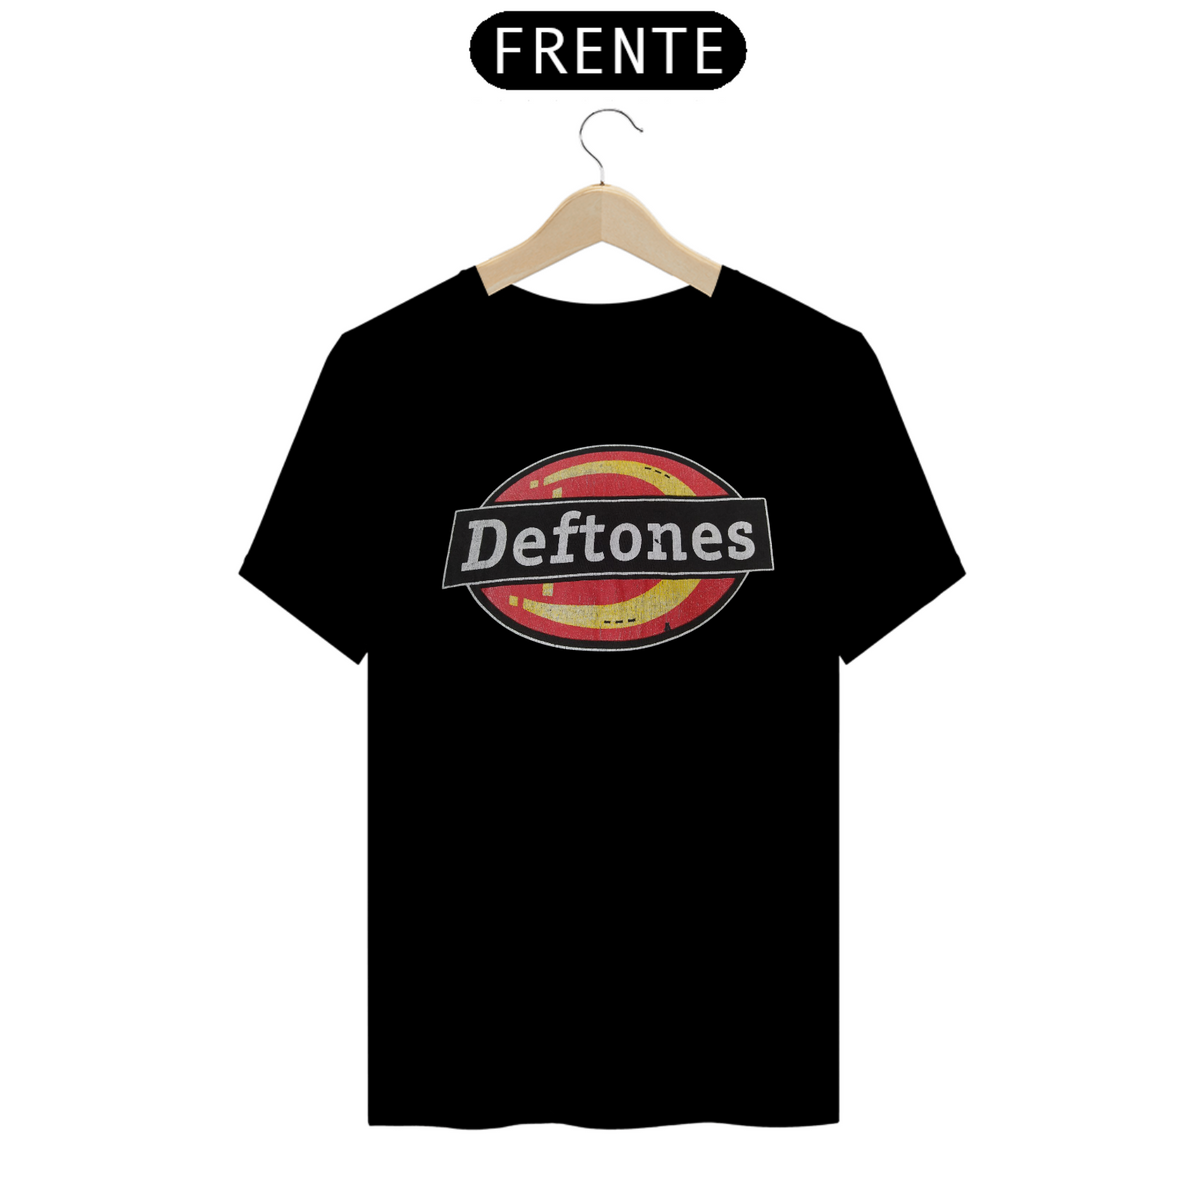 Nome do produto: Deftones